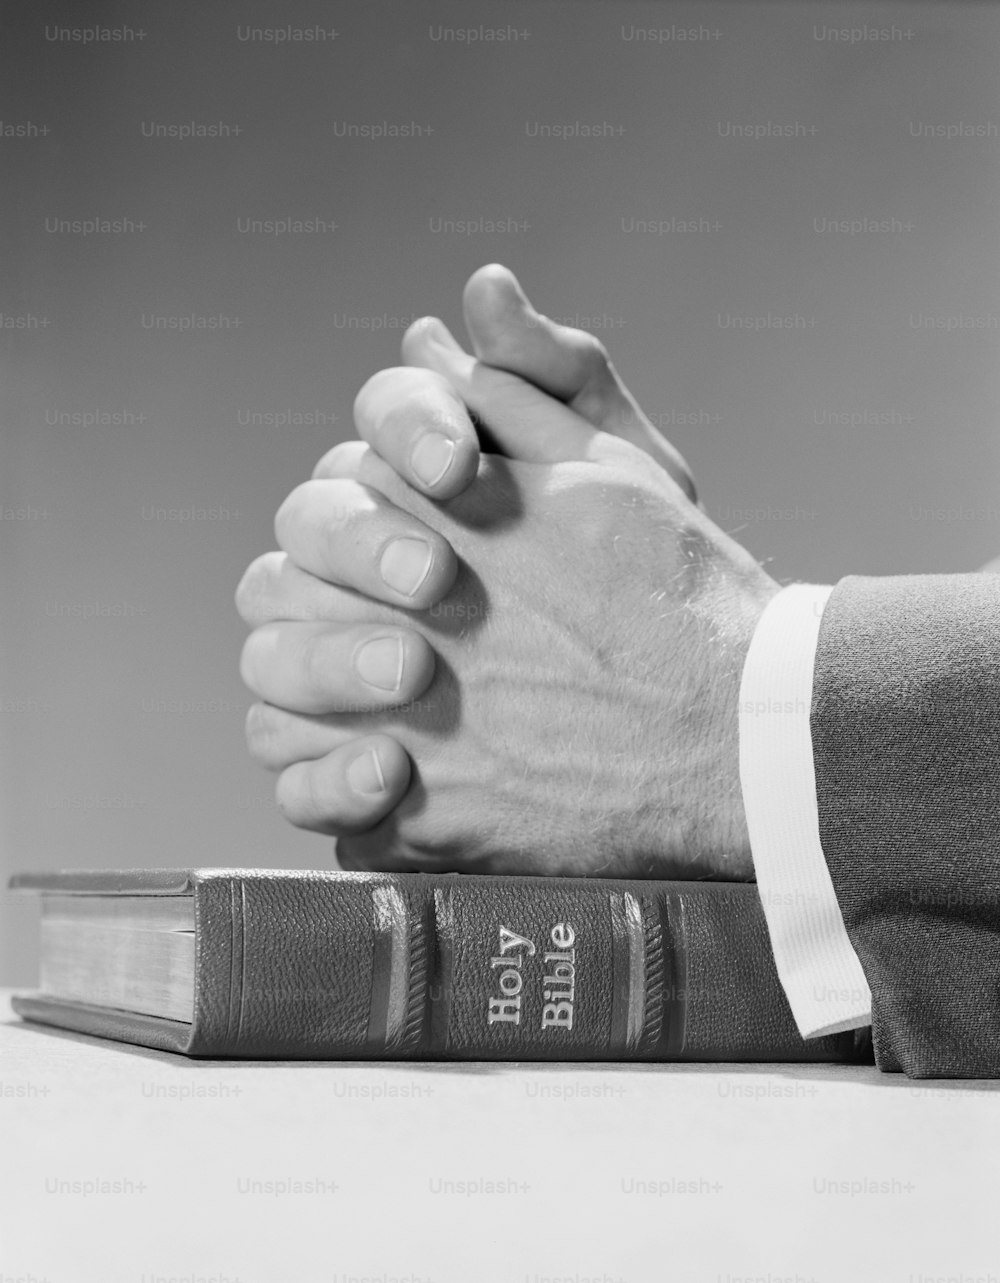 ESTADOS UNIDOS - POR VOLTA DE 1960: As mãos do homem descansando em cima da Bíblia sagrada, em oração.